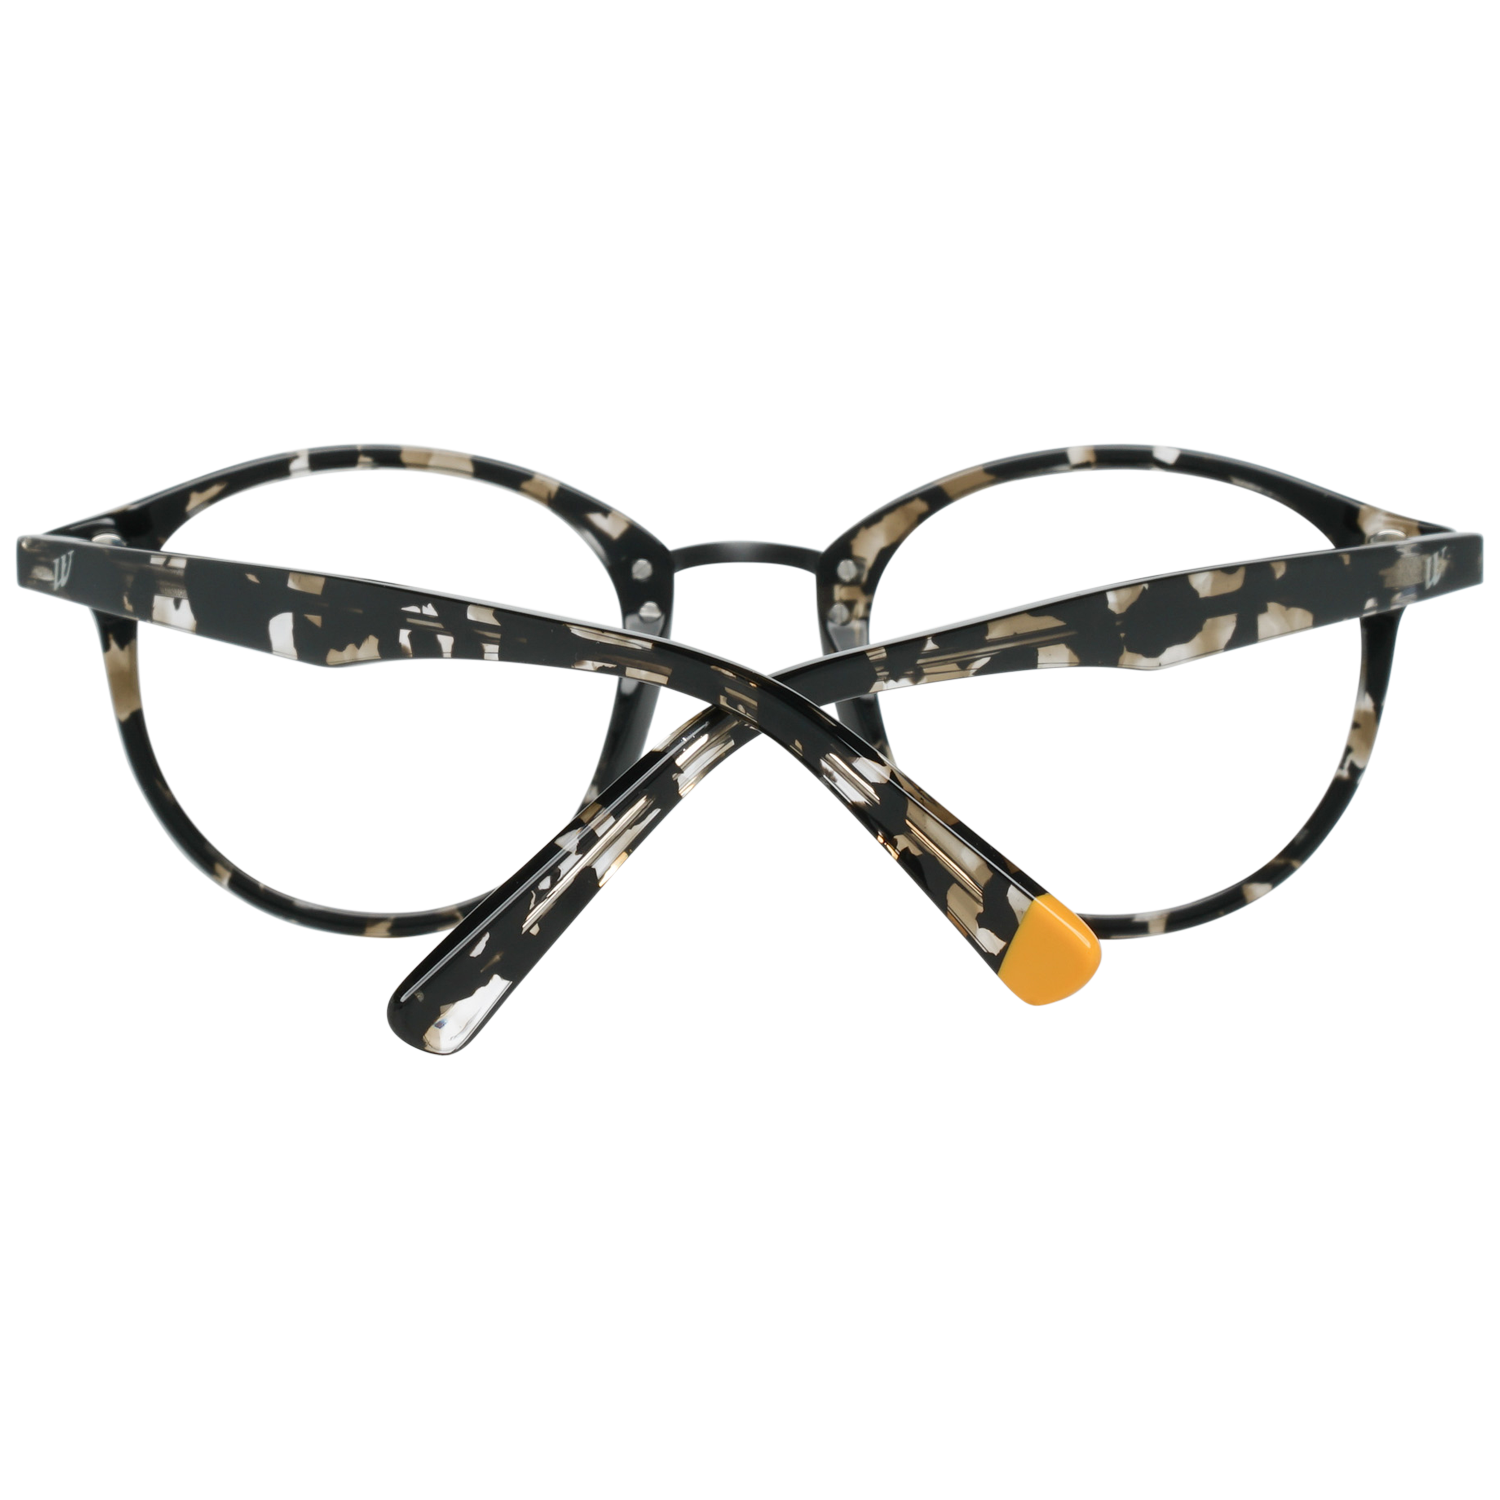 Web Frames Web Glasses Optical Frame WE5222 055 48 Eyeglasses Eyewear UK USA Australia 